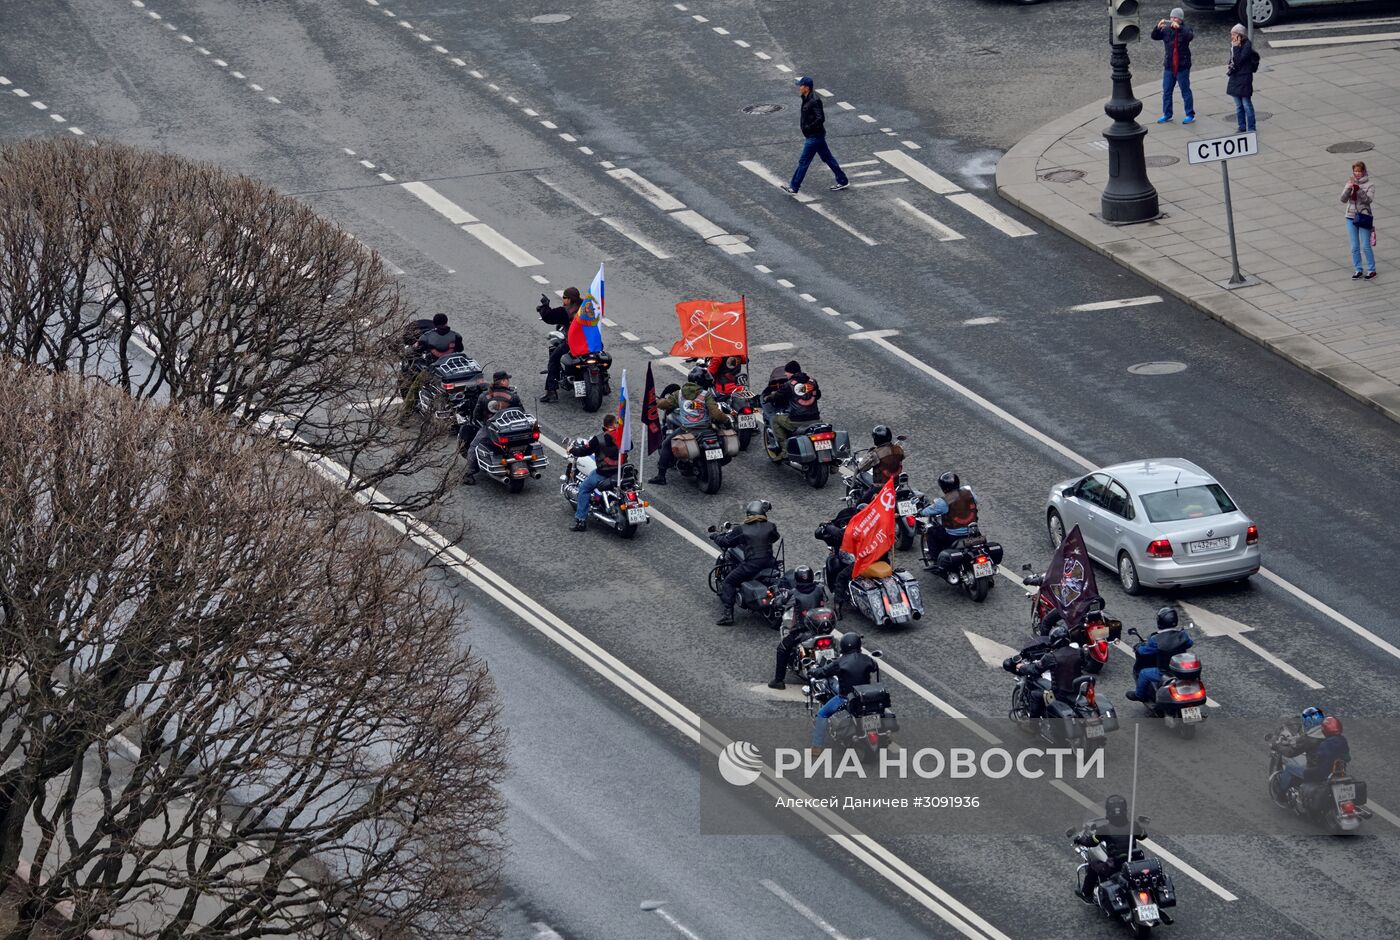 "Ночные Волки" освятили мотоциклы возле Исаакиевского собора в Санкт-Петербурге